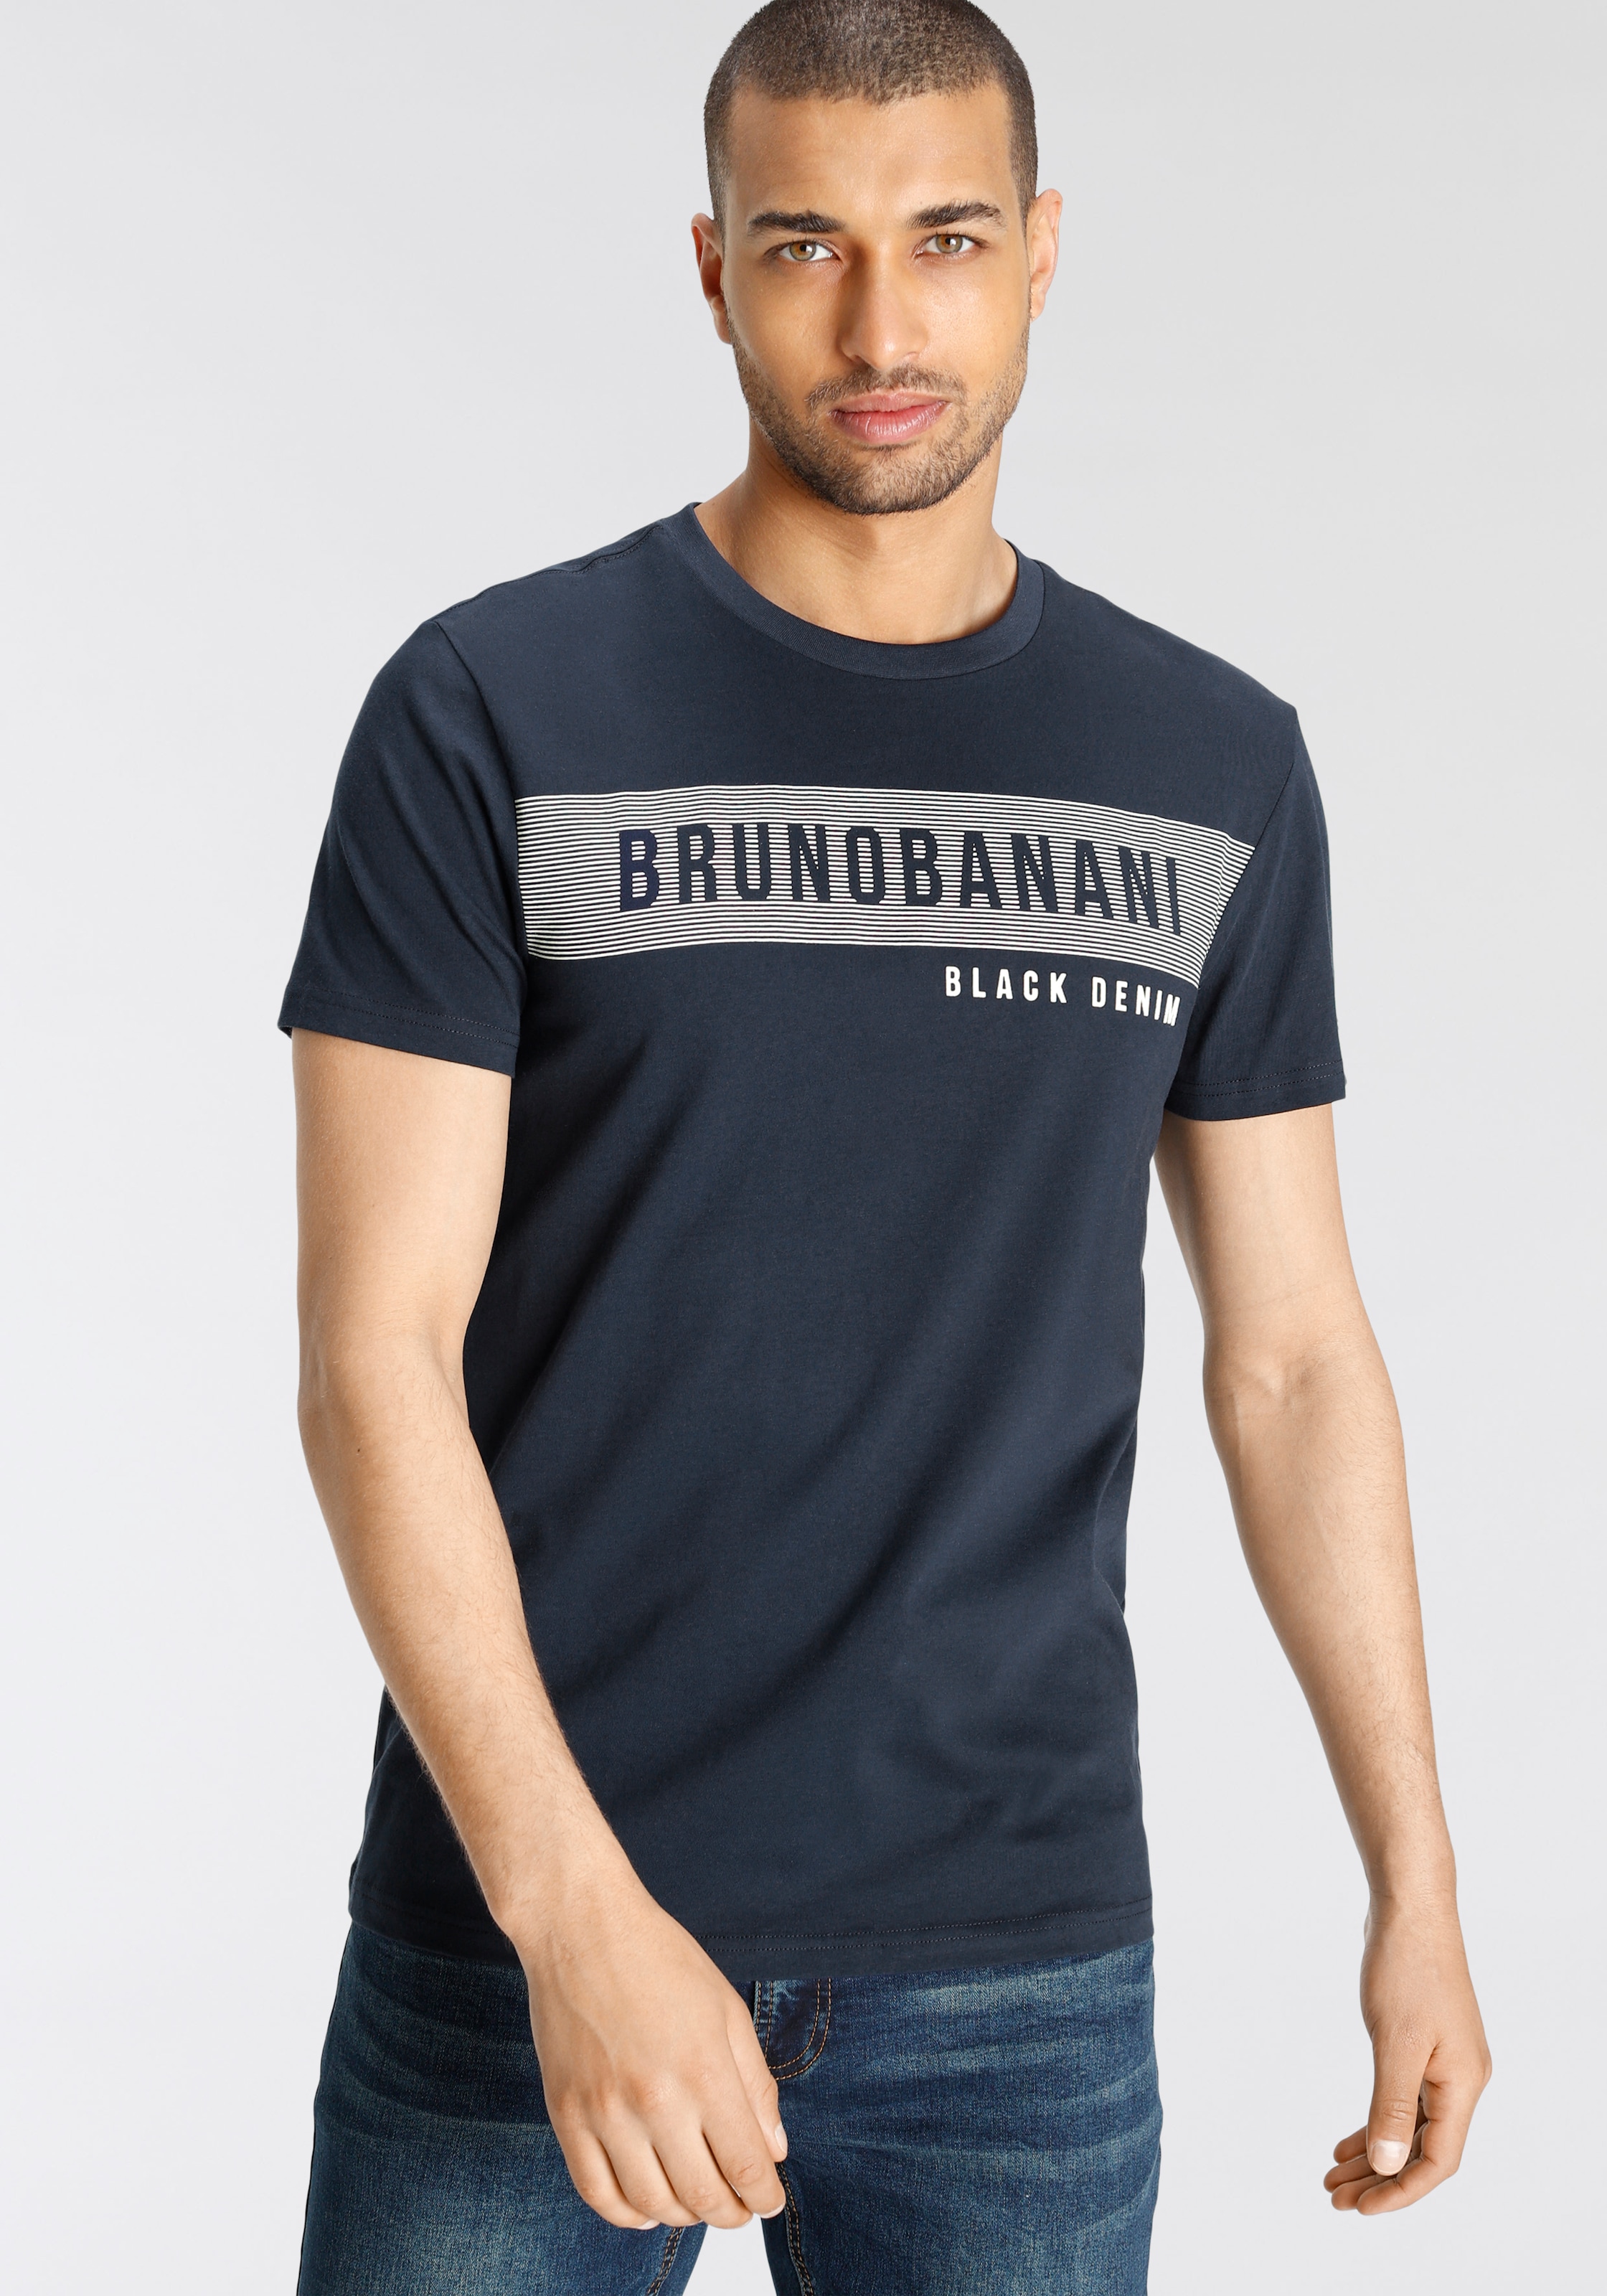 Bruno Banani T-Shirt, mit Markenprint OTTO shoppen bei online